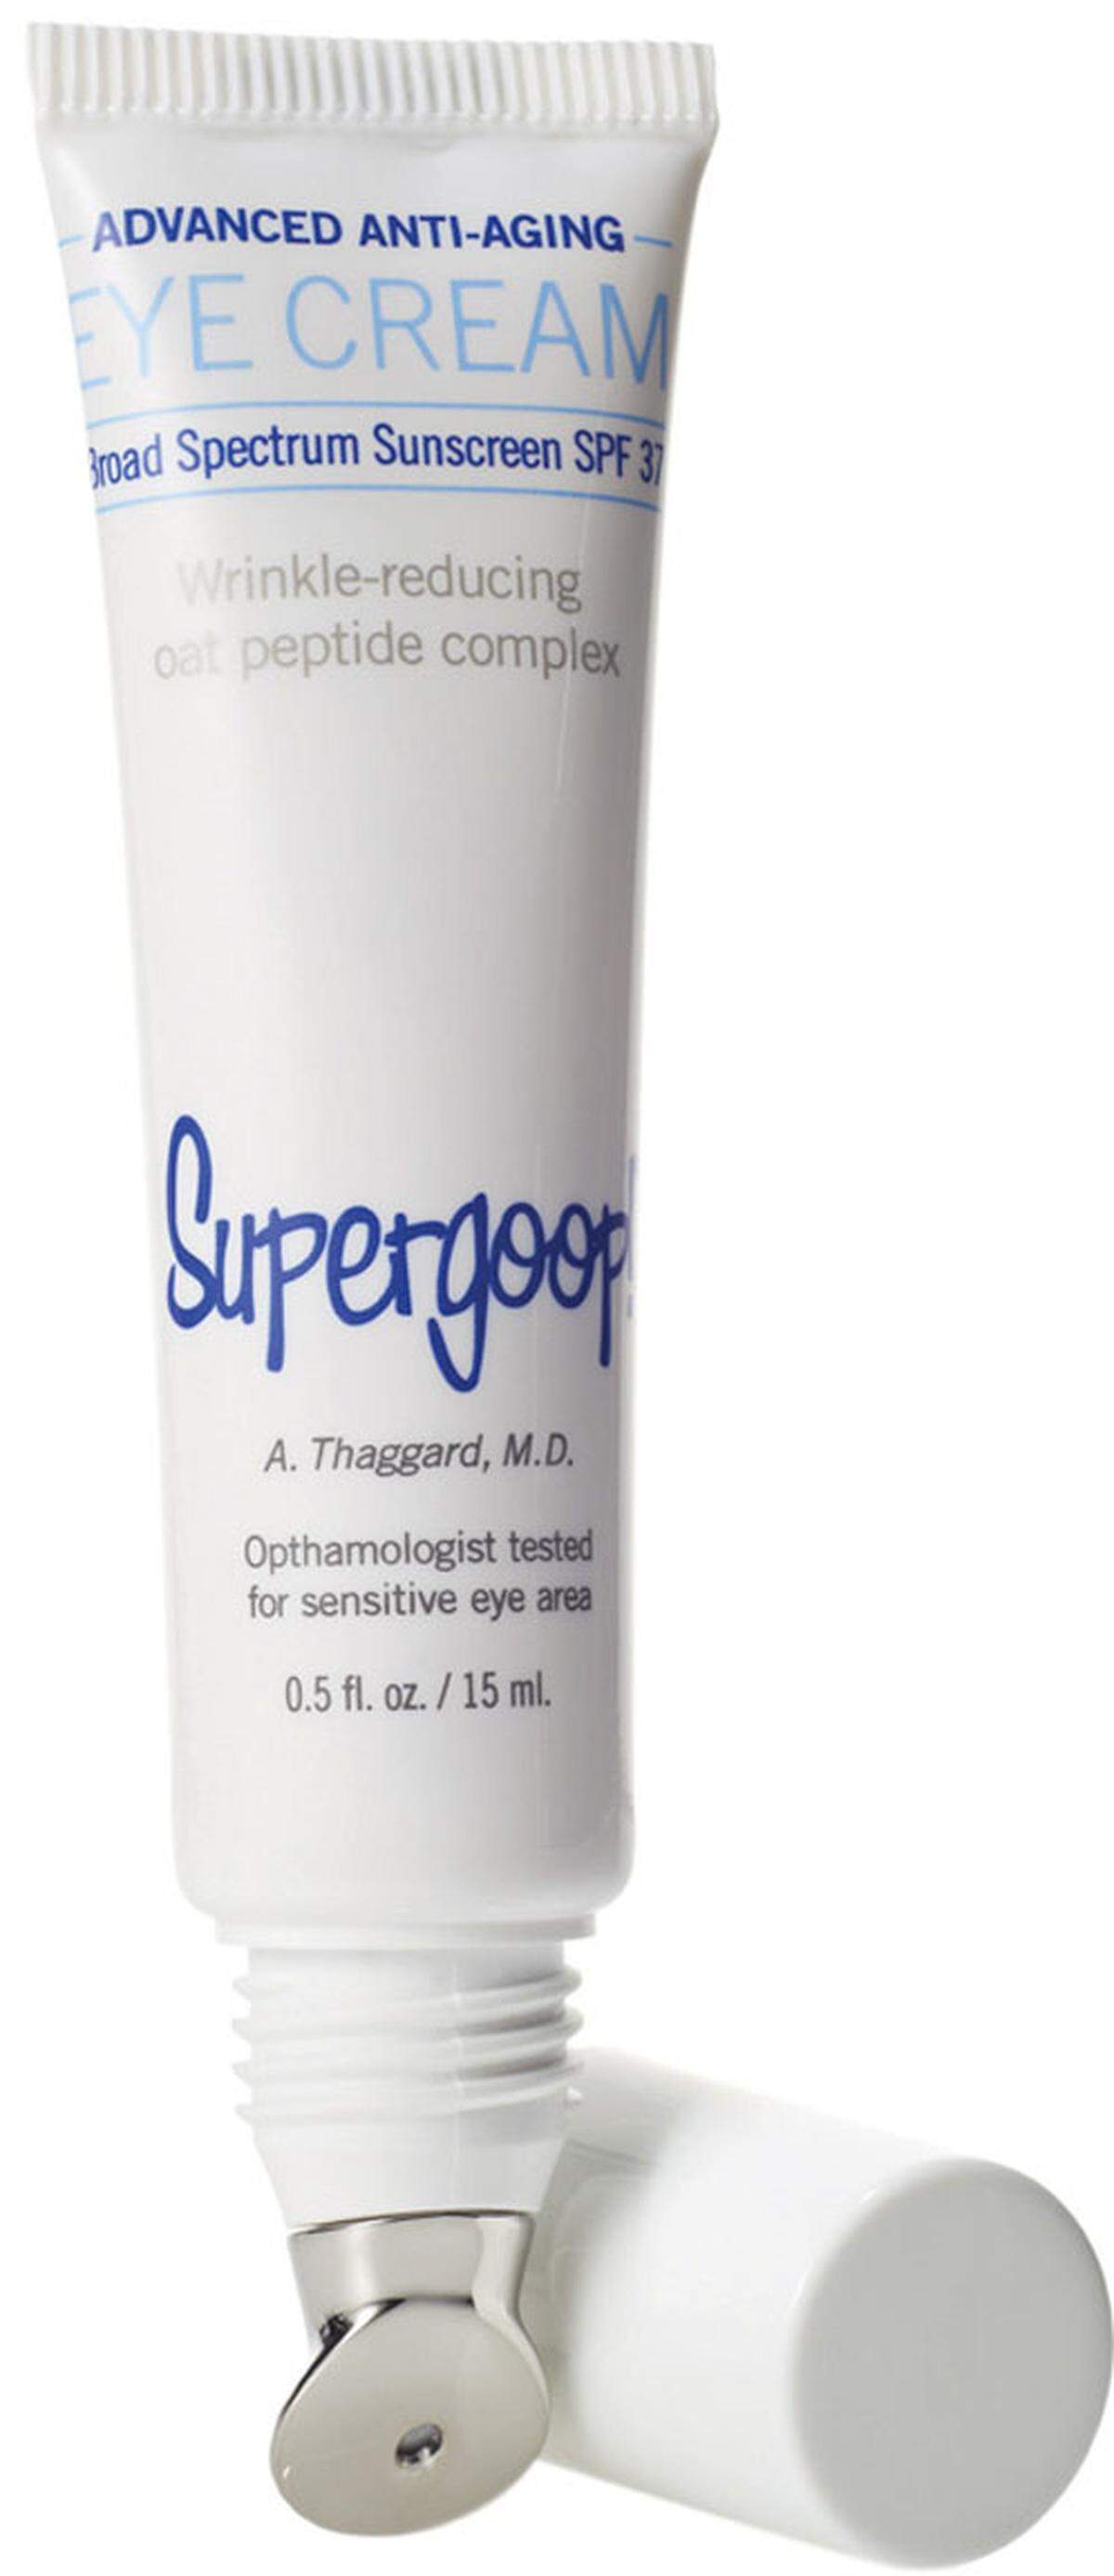 Die Advanced SPF 40 Antioxidant-Infused Anti-Aging Eye Cream von Supergoop! schützt die empfindliche Augenpartie mit Lichtschutzfaktor 40. Die Massagespitze zum Auftragen kühlt und lässt Schwellungen abklingen. Preis: 49 Euro/15ml.